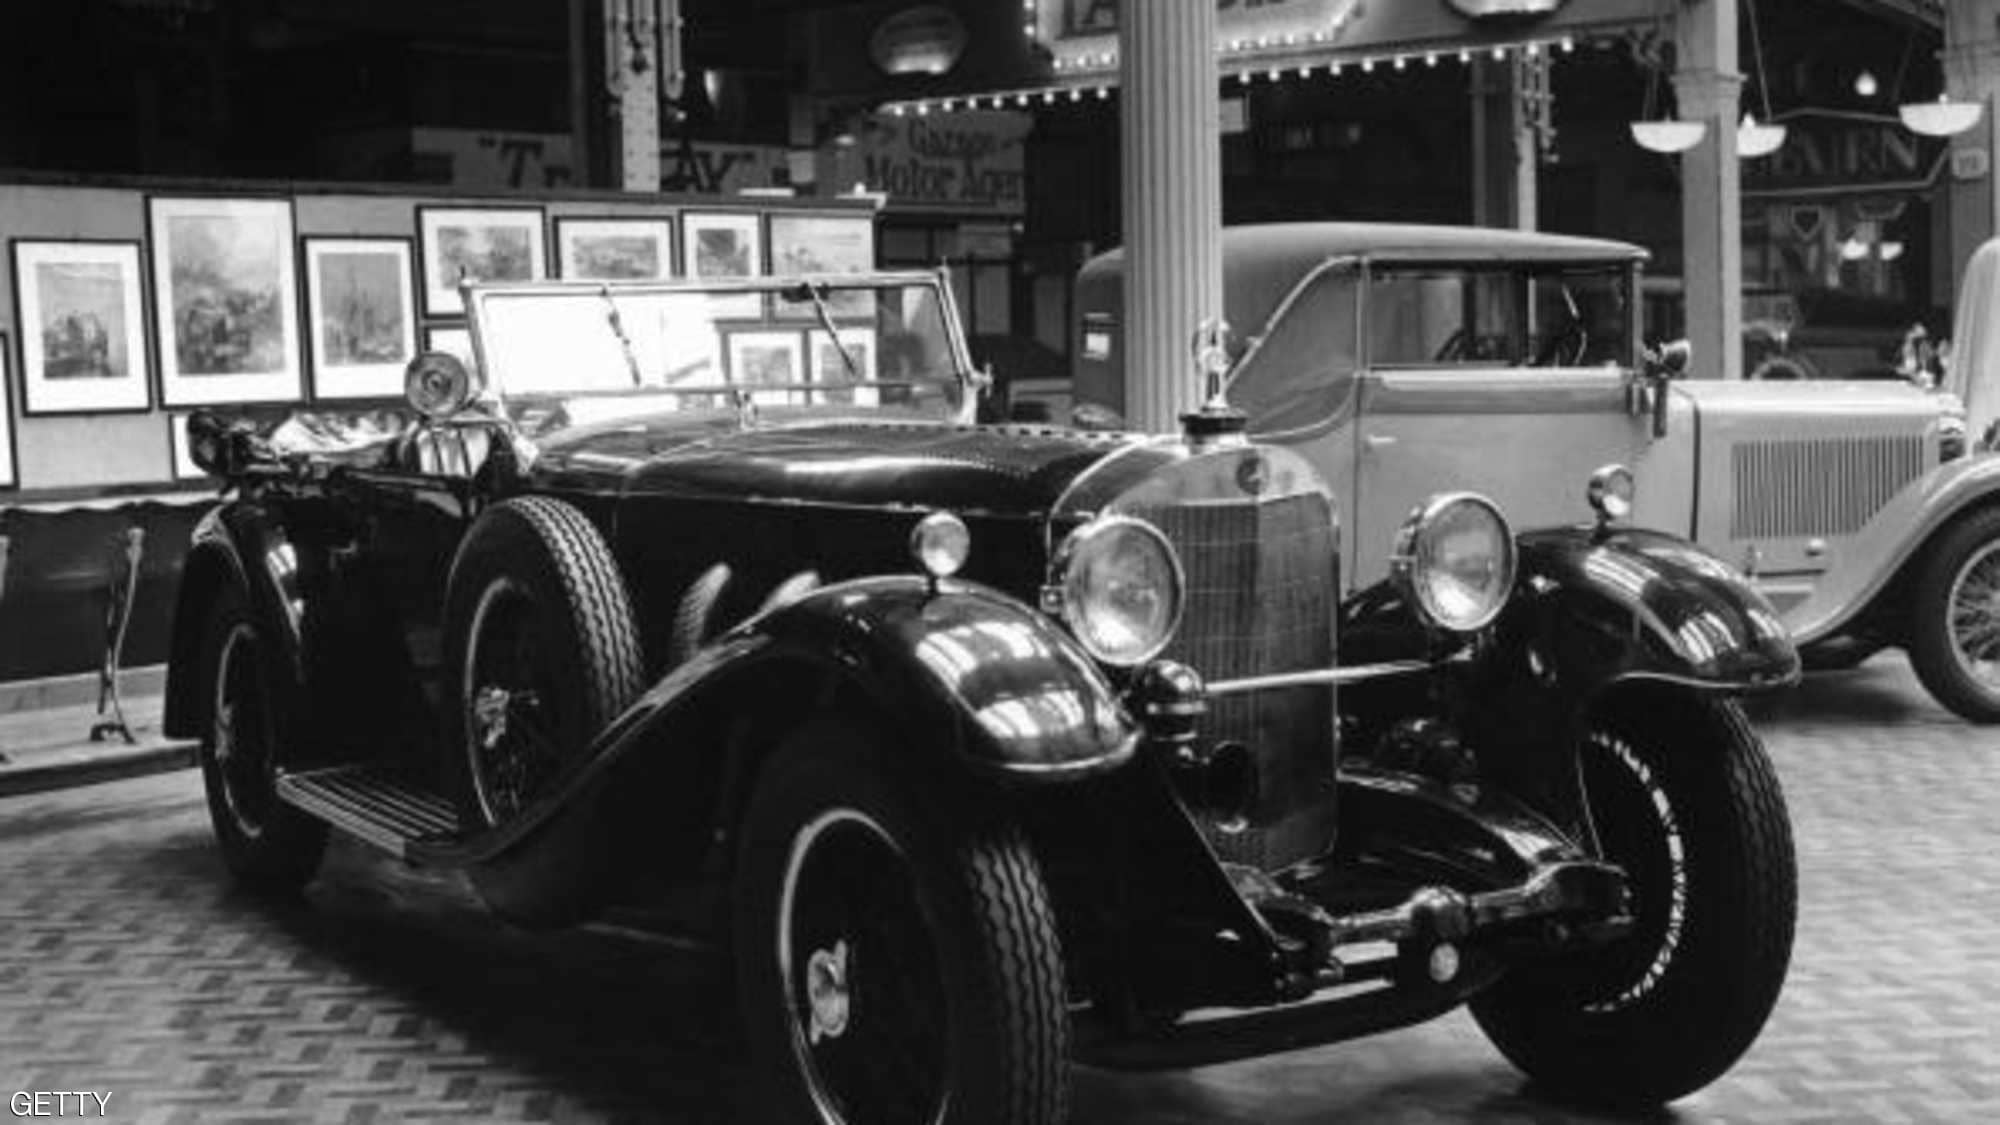 "بالصور" هذا ما بدت عليه السيارات قبل 100 عام من الآن 8